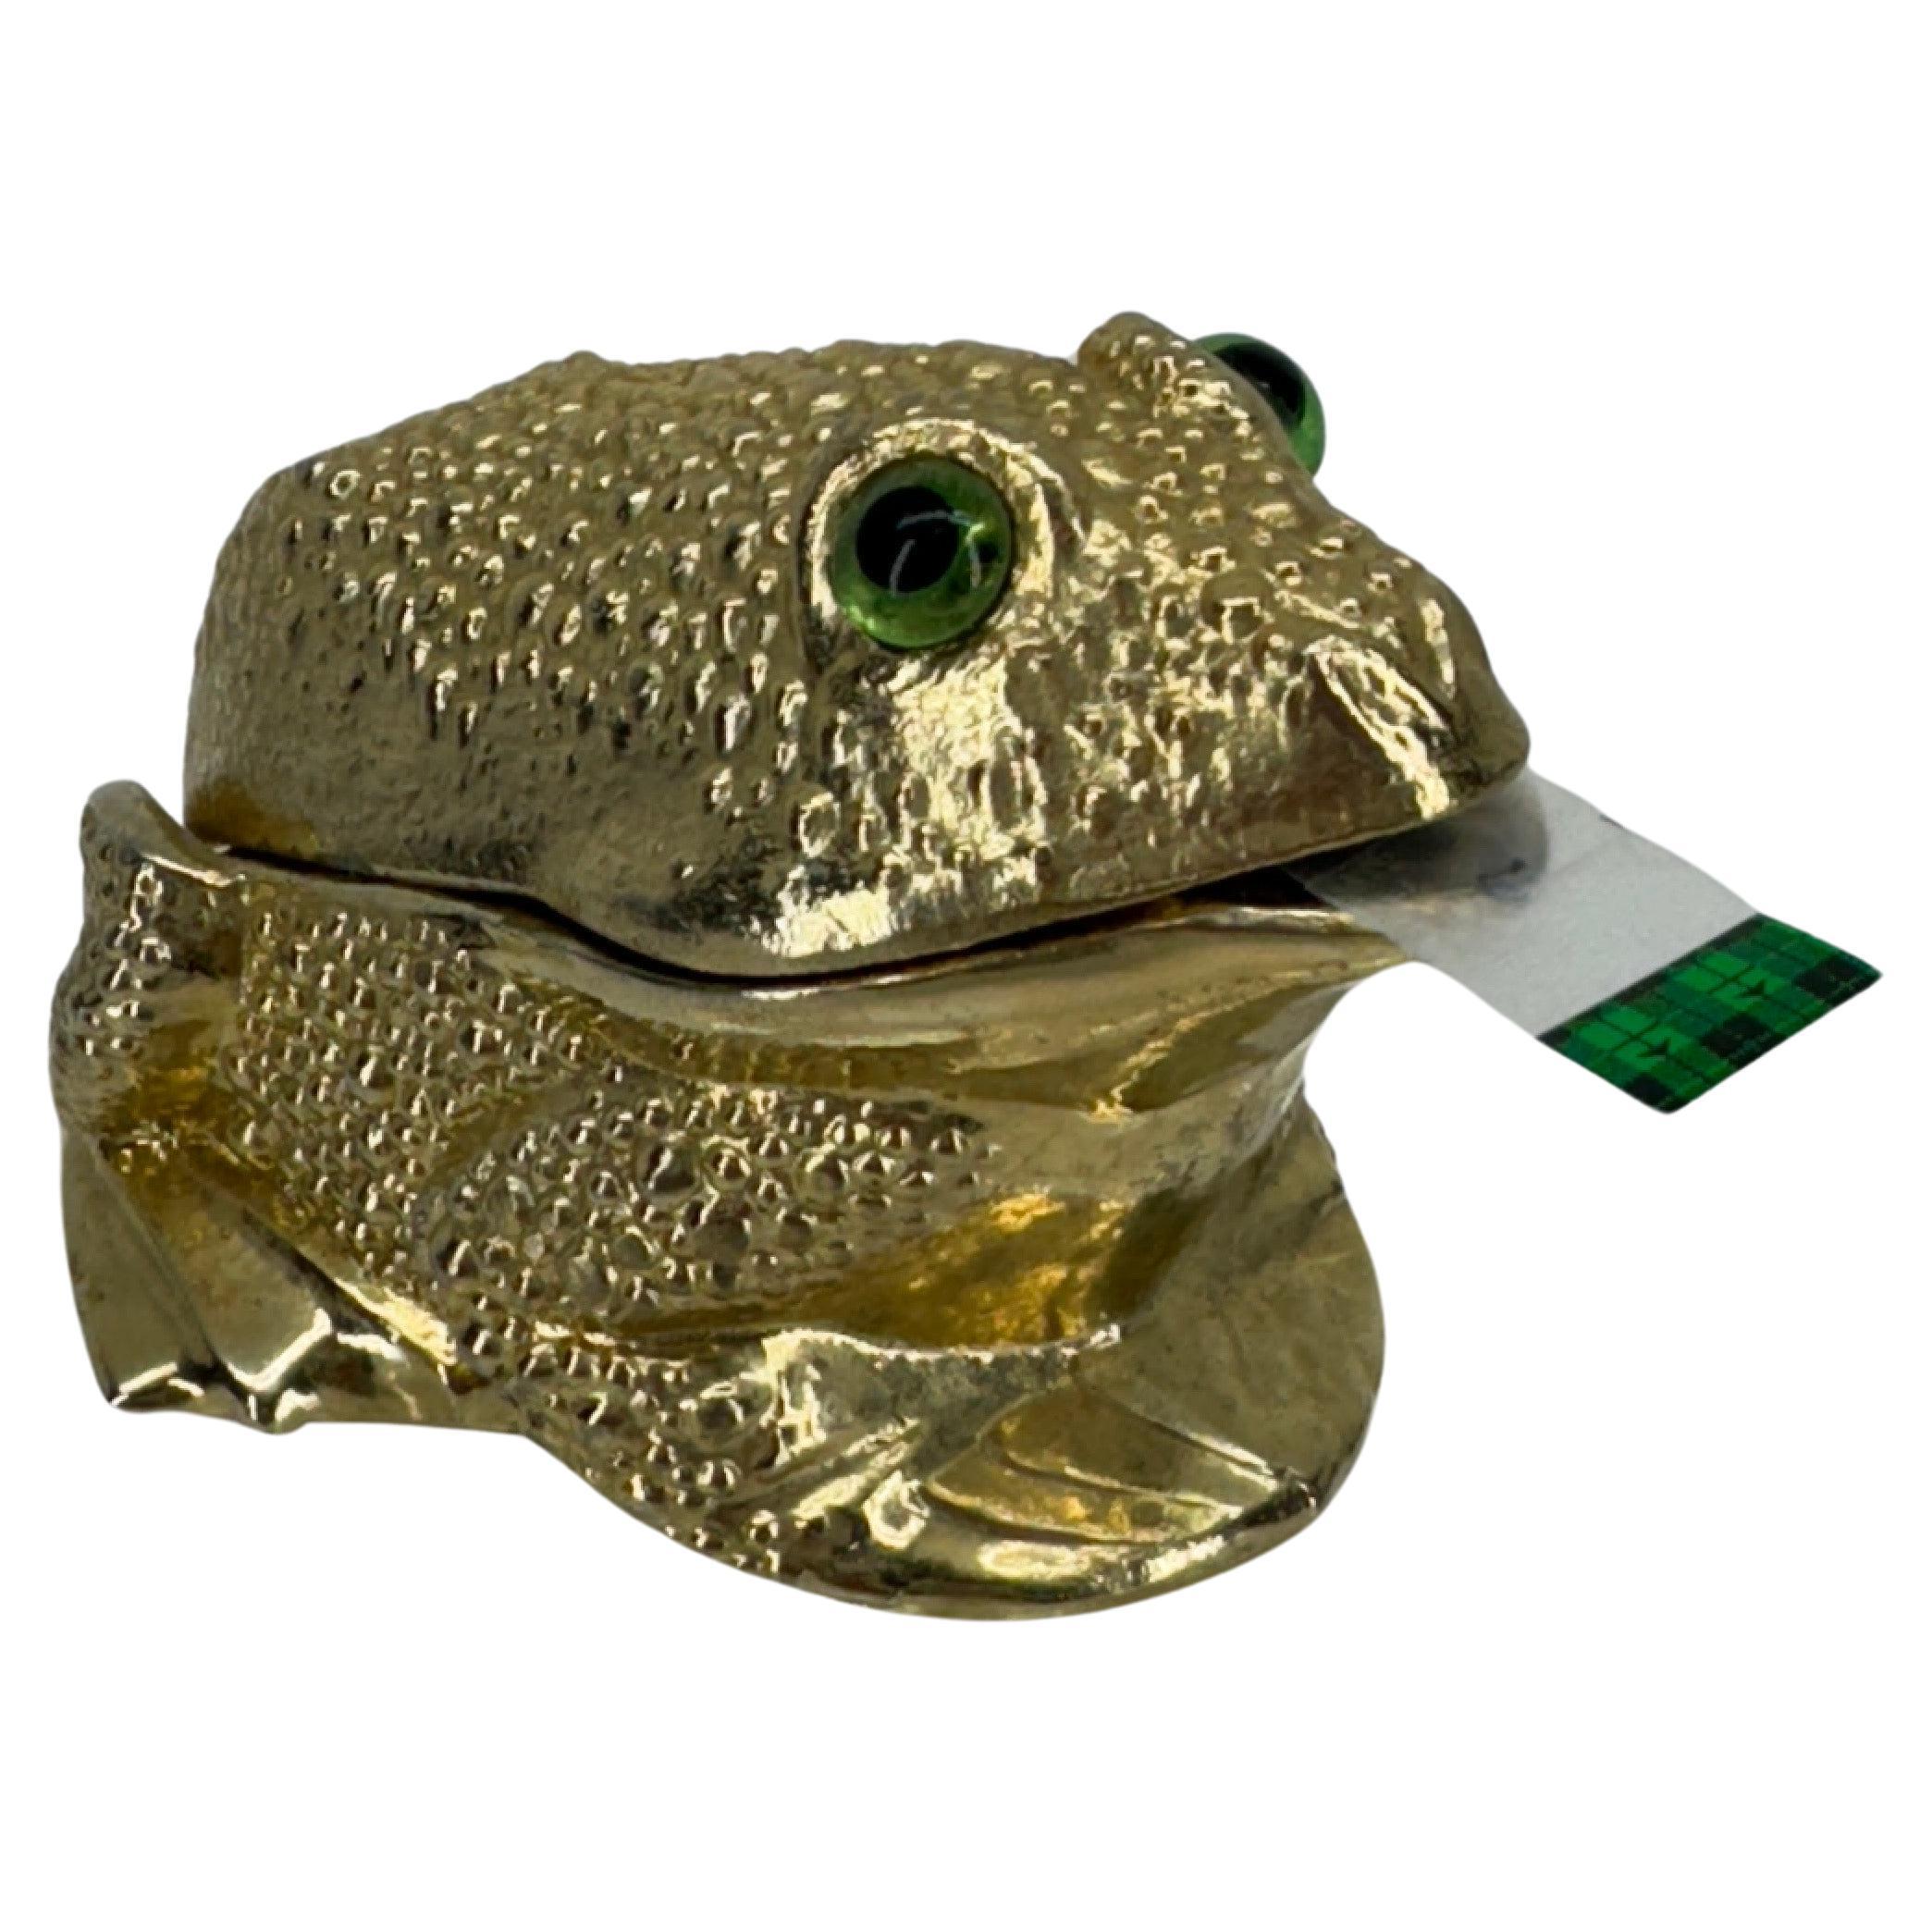 Texturierter goldfarbener Frosch-Klebebandspender aus Metall, 1960er Jahre

Dieser zweiteilige Klebebandabroller im Vintage-Stil ist von Ted Arnold Ltd. Der charmante Frosch mit grünen Glasaugen ist auf dem Innendeckel eingeprägt. Dieser Frosch ist